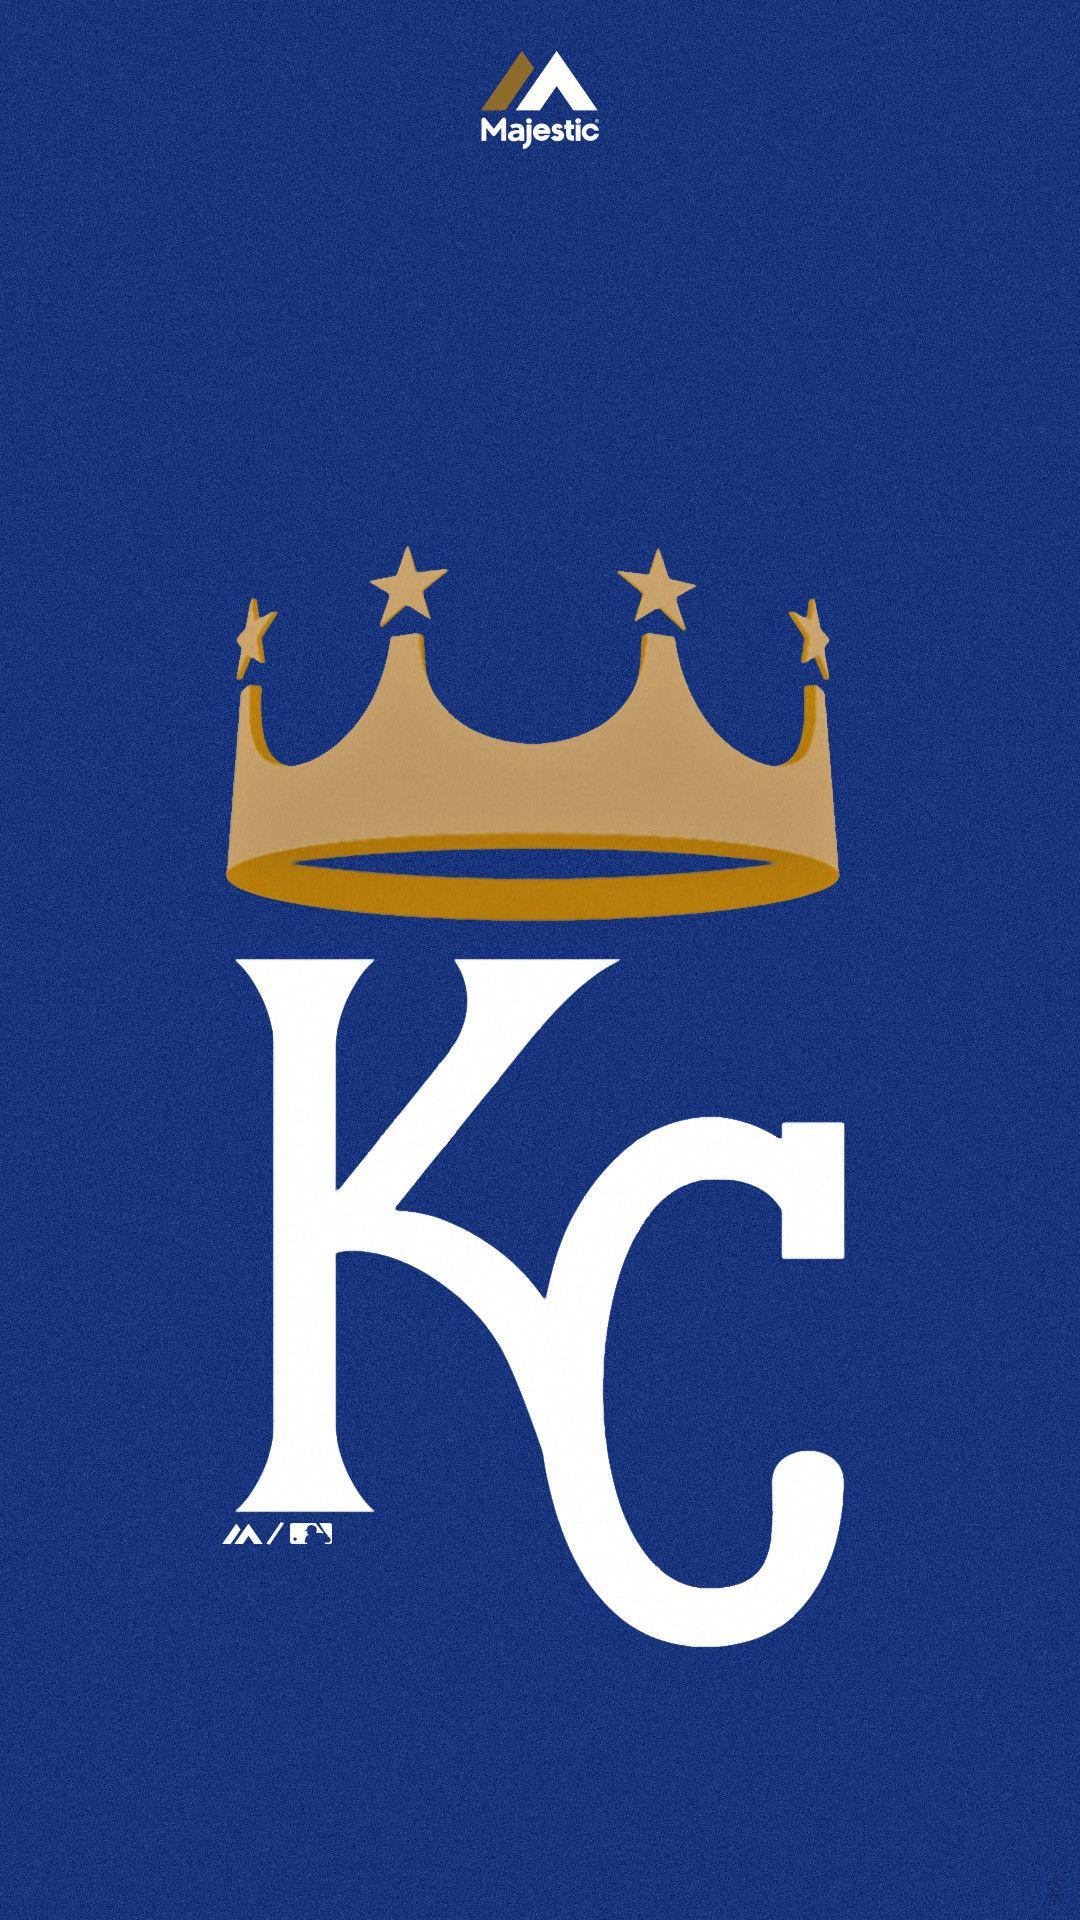 Kansas City Royals 2018 Wallpapers - Wallpaper Cave